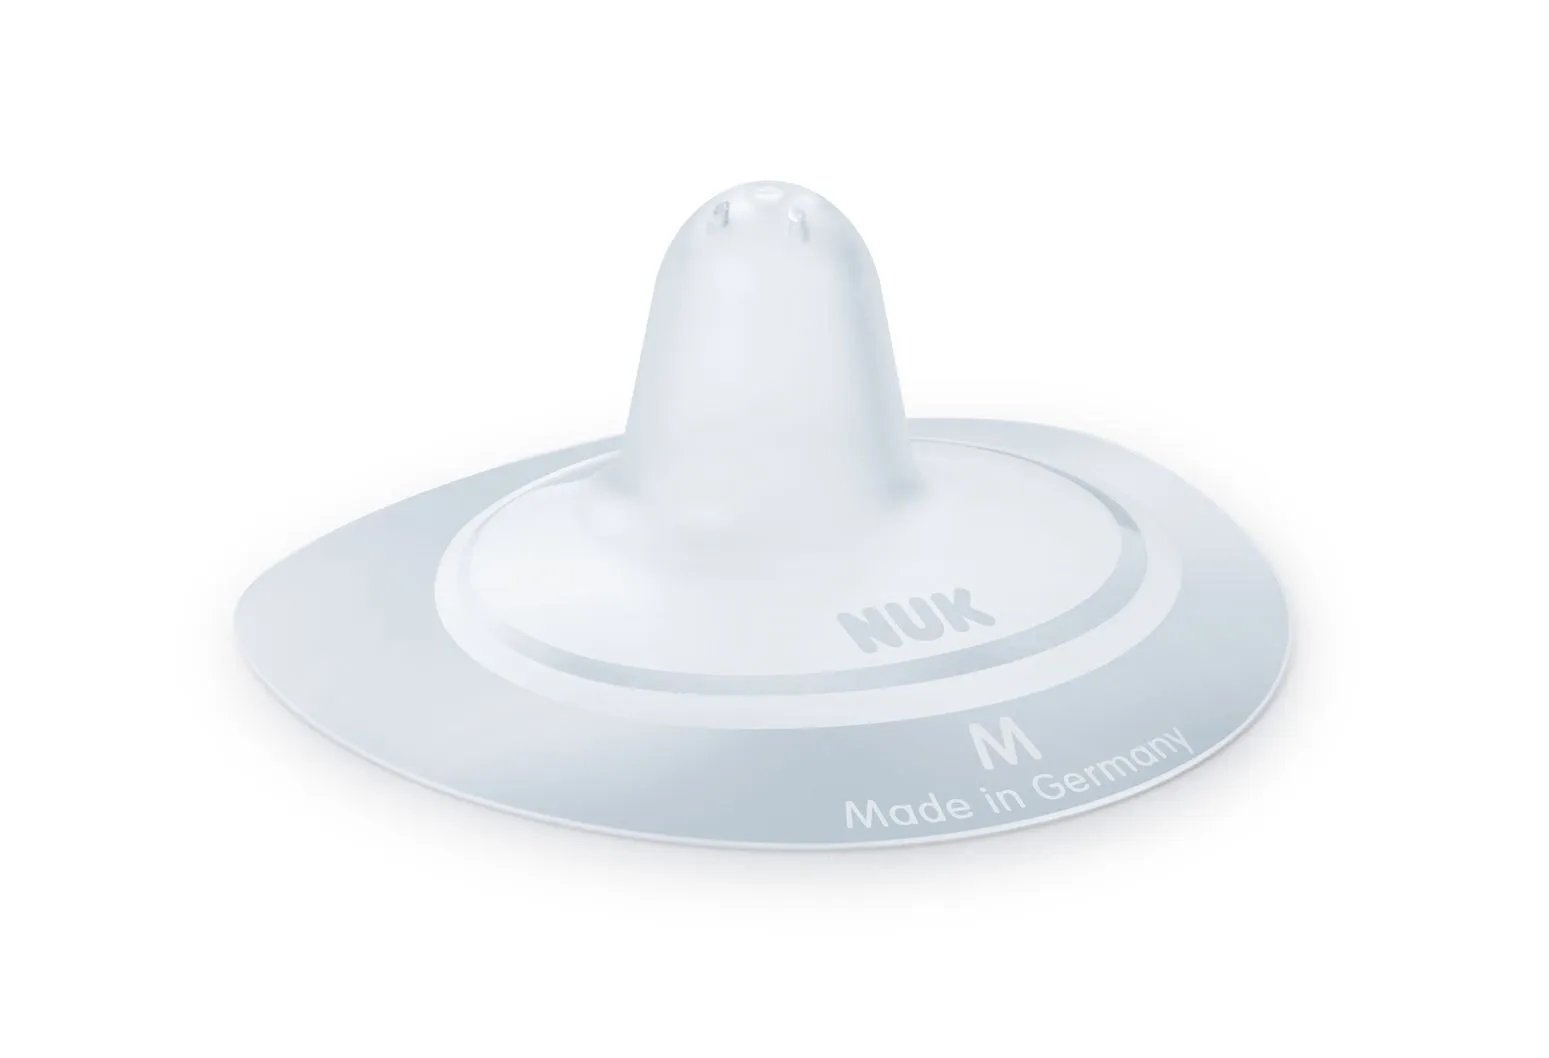 NUK Ochranný prsní klobouček vel. M 2 ks + box